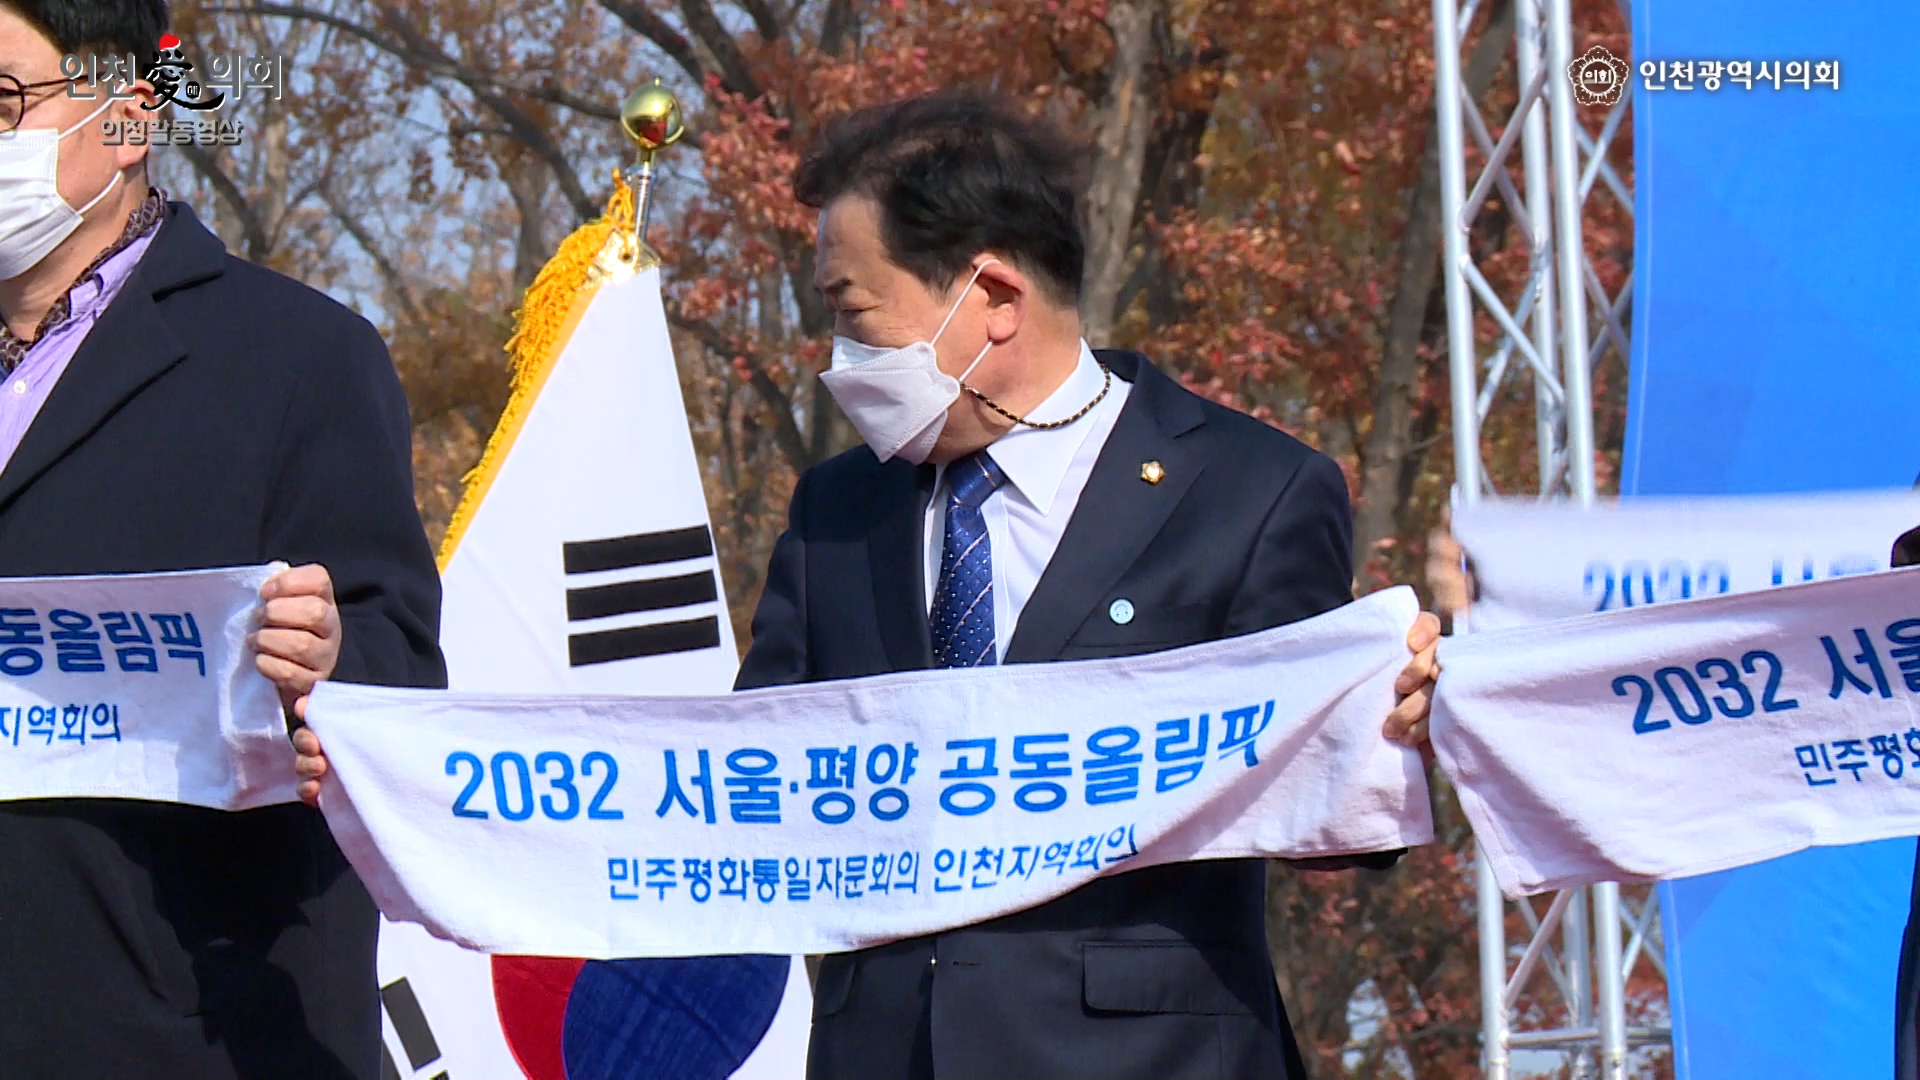 2032 서울·평양 공동올림픽 유치기원 평화통일 행사 사진